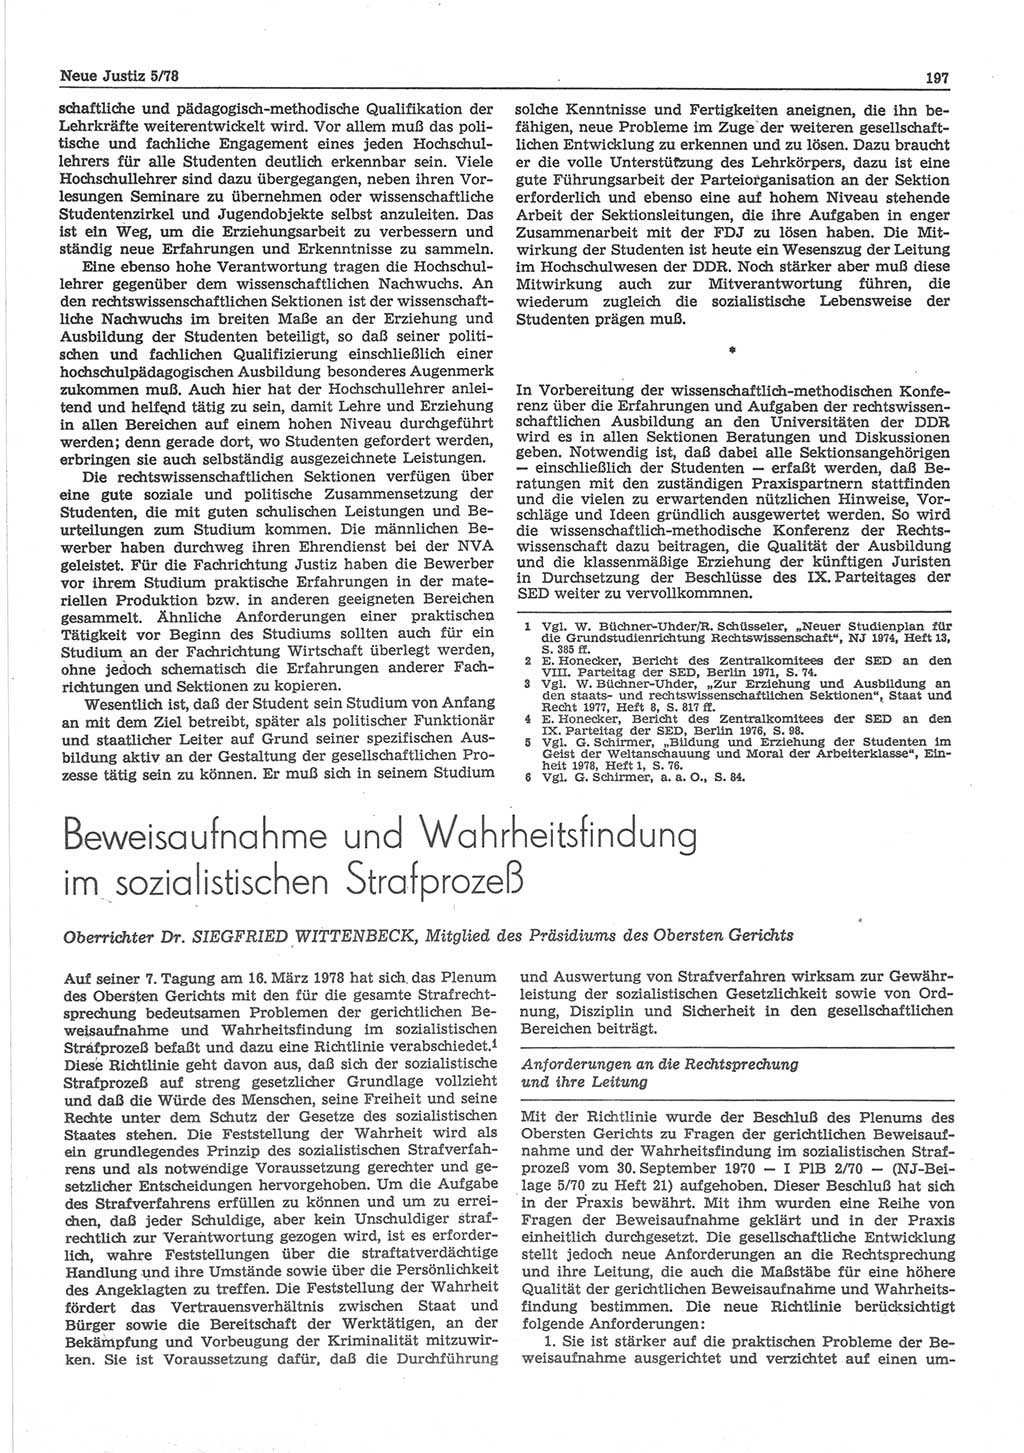 Neue Justiz (NJ), Zeitschrift für sozialistisches Recht und Gesetzlichkeit [Deutsche Demokratische Republik (DDR)], 32. Jahrgang 1978, Seite 197 (NJ DDR 1978, S. 197)